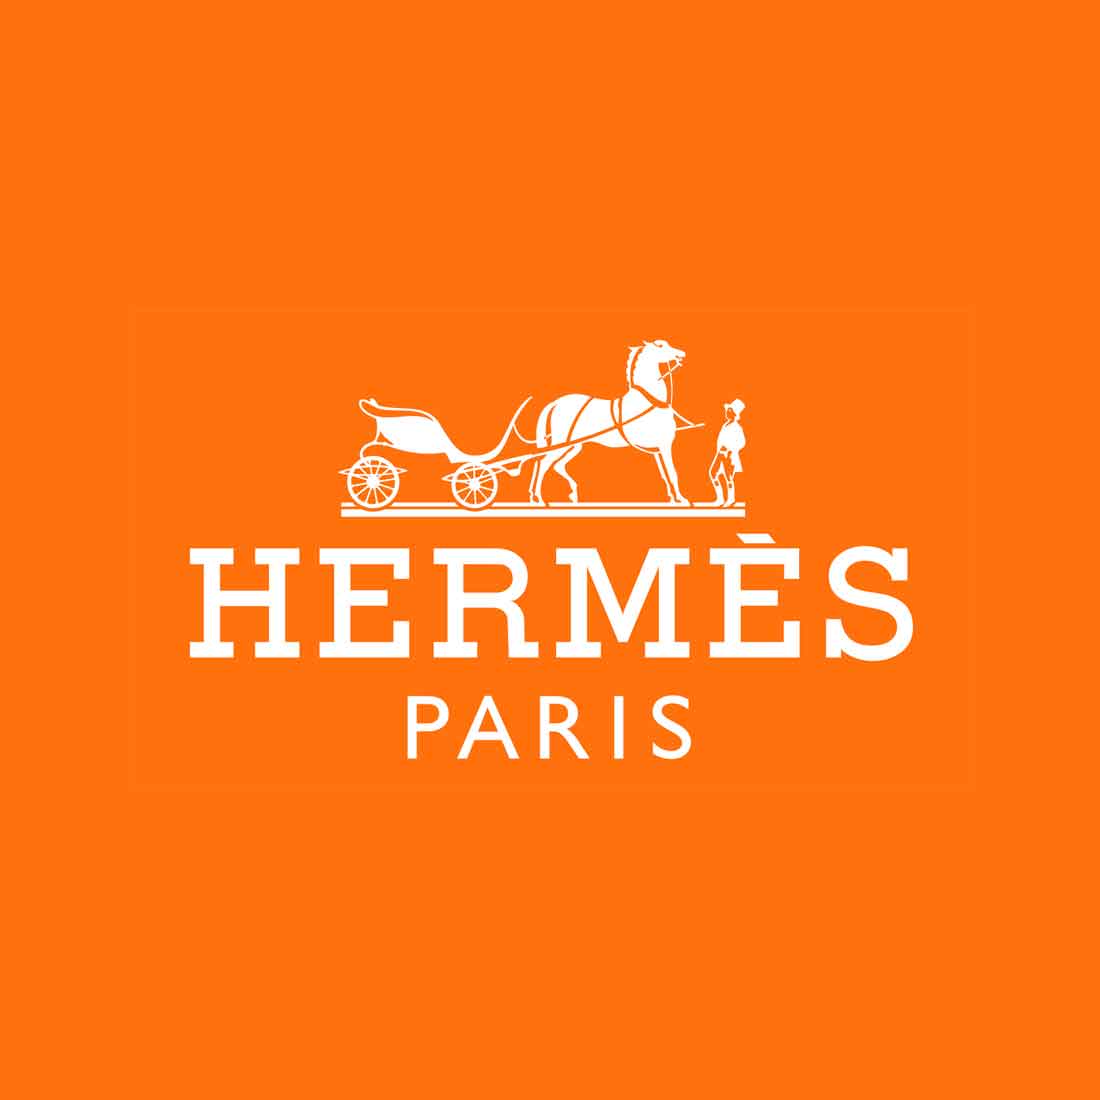 Dalle Carrozze al Lusso: L'evoluzione del logo Hermès